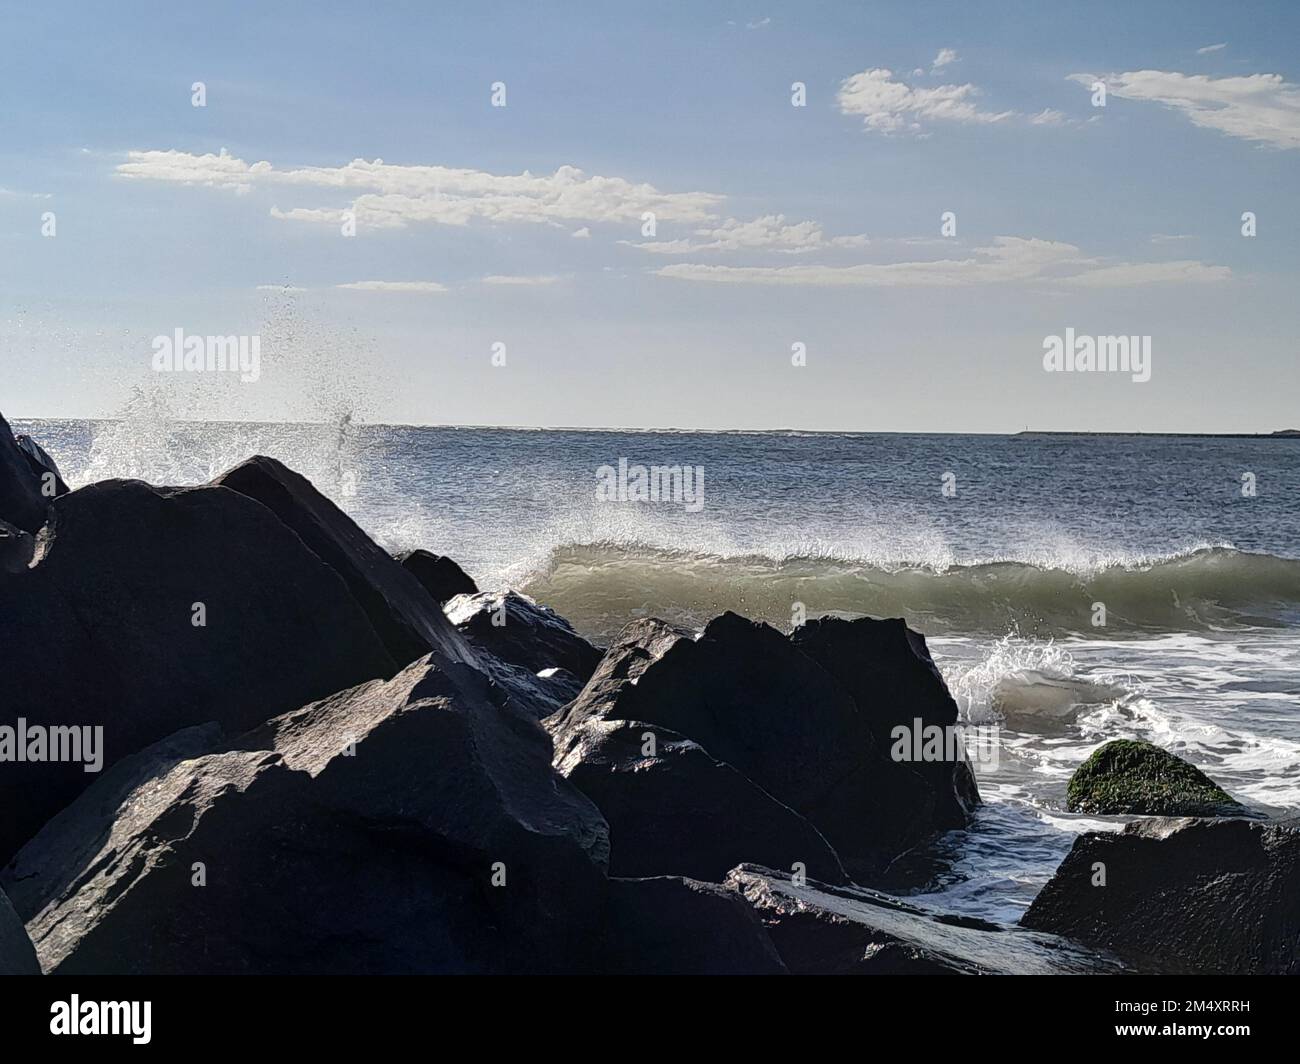 Es war ein windiger Tag am Ufer, und ich habe ein Bild von brechenden Wellen gefangen, als sie auf die Felsen stießen. Dieser Teil des Strandes liegt in der Nähe von Sea Isle City NJ Stockfoto